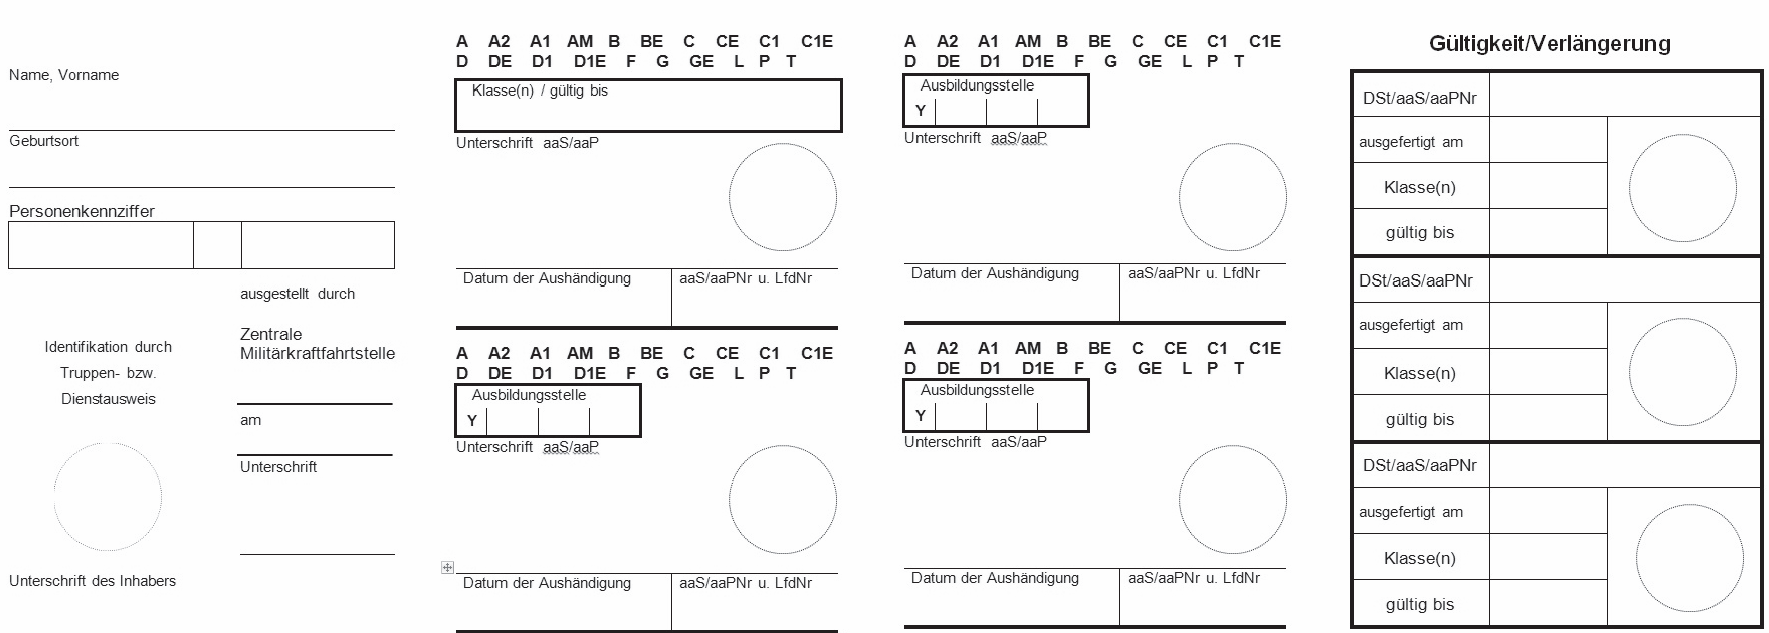 Muster des Dienstführerscheins der Bundeswehr, Rückseite (BGBl. 2017 I S. 3237)